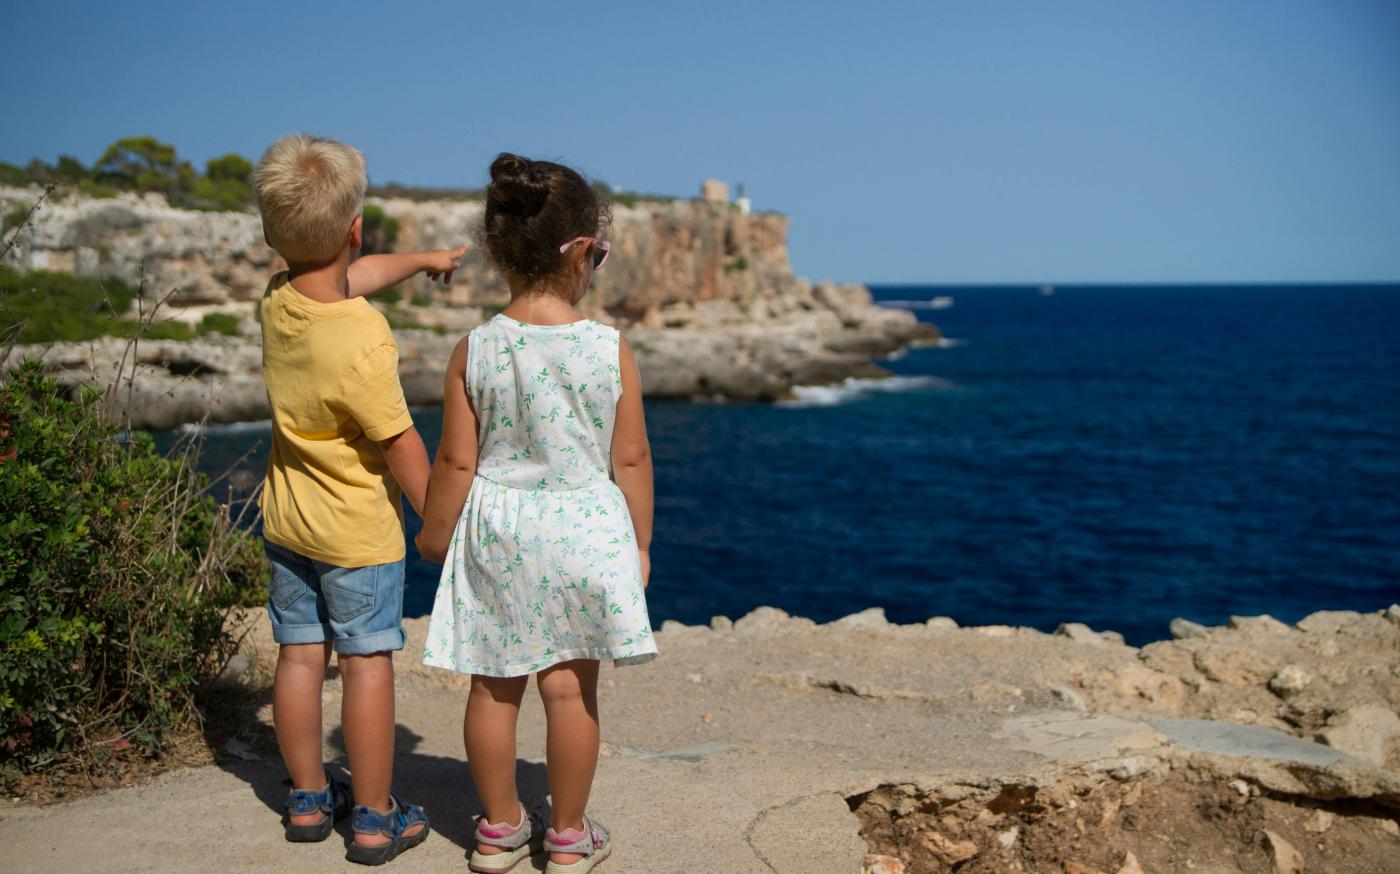 two children standing near cliff watching on ocean at daytime by Torsten Dederichs courtesy of Unsplash.